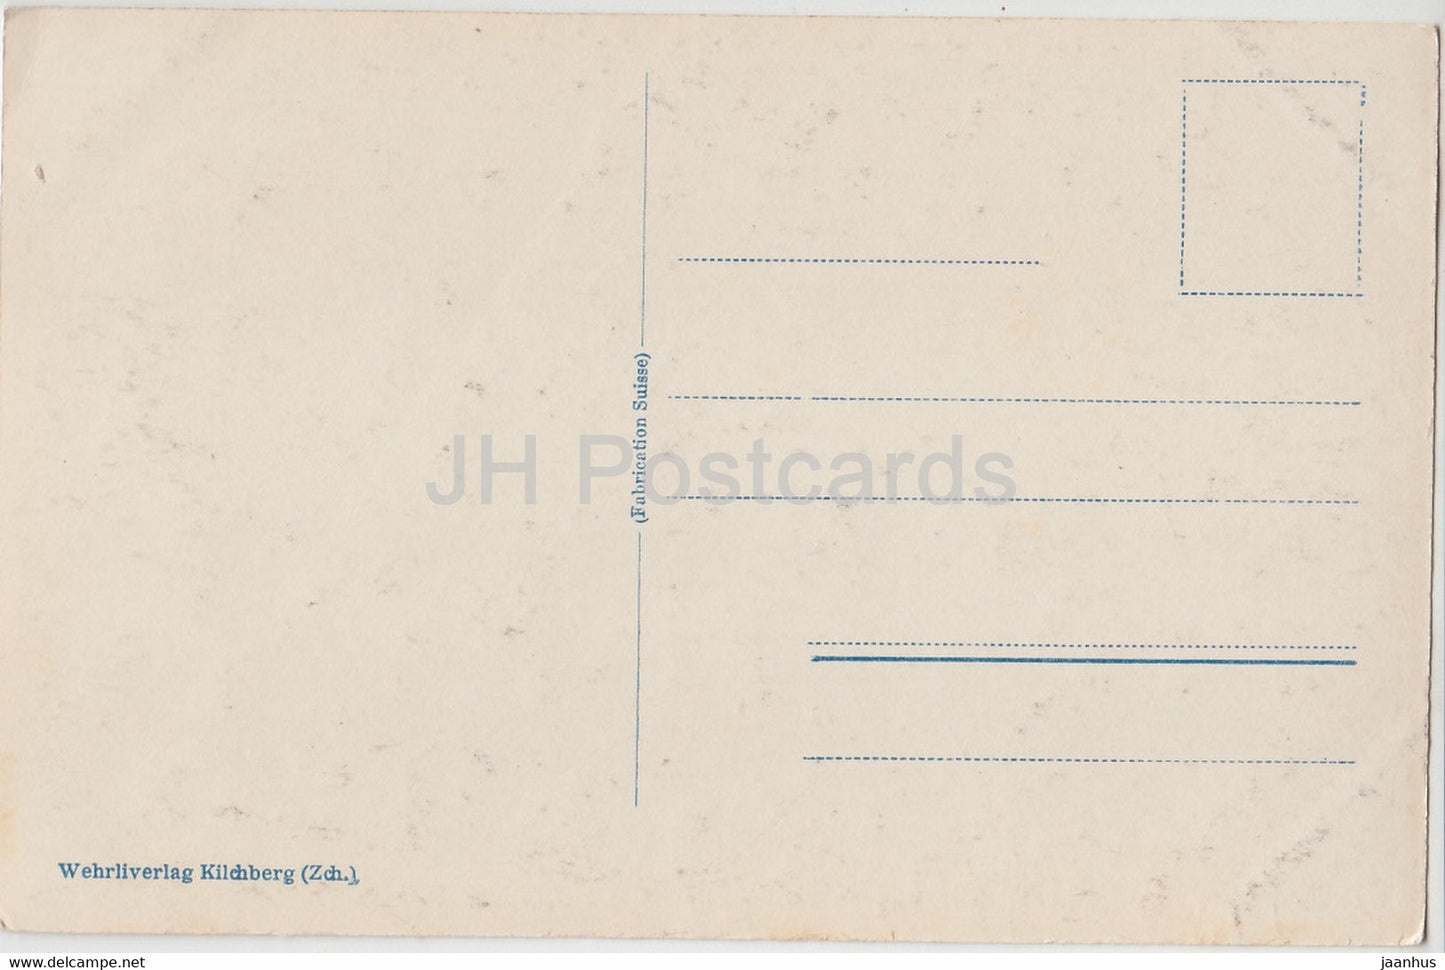 Zürich von der Weid – 2953 – alte Postkarte – 1925 – Schweiz – gebraucht